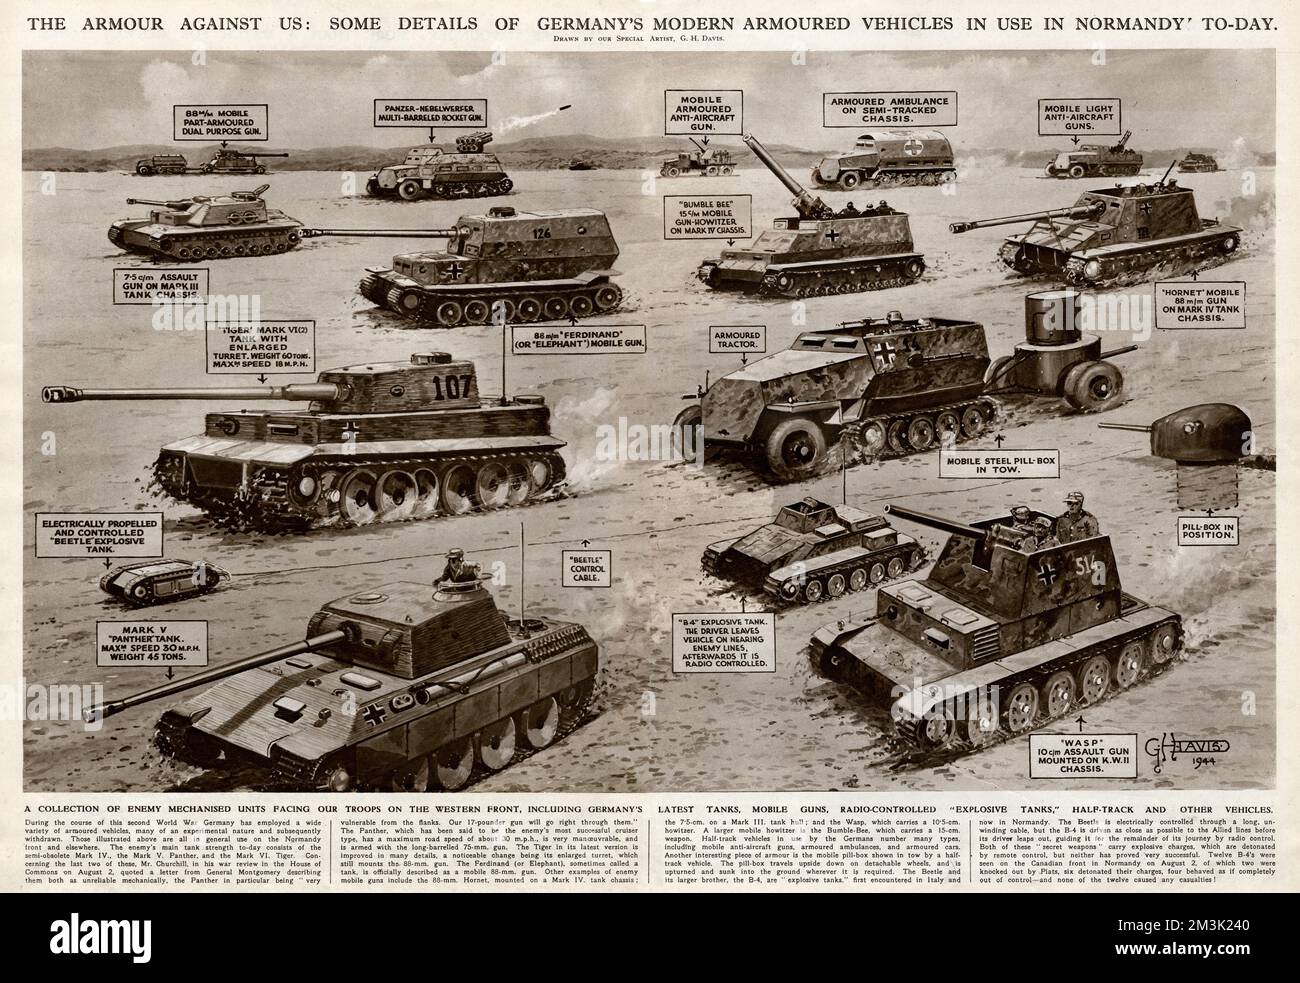 Moderni veicoli blindati tedeschi utilizzati durante la battaglia per la Normandia, seconda guerra mondiale. I veicoli mostrati includono carri armati Panther e Tiger (in primo piano a sinistra), due pistole d'assalto (una a Wasp), cacciatorpediniere Elephant e Hornet, diversi veicoli antiaerei, un'ambulanza blindata e due carri armati esplosivi telecomandati (un B4 e un Beetle). NB: Questi veicoli erano solo quelli che gli Alleati conoscevano e lasciavano che le informazioni fossero pubblicate in quel momento. 1944 Foto Stock